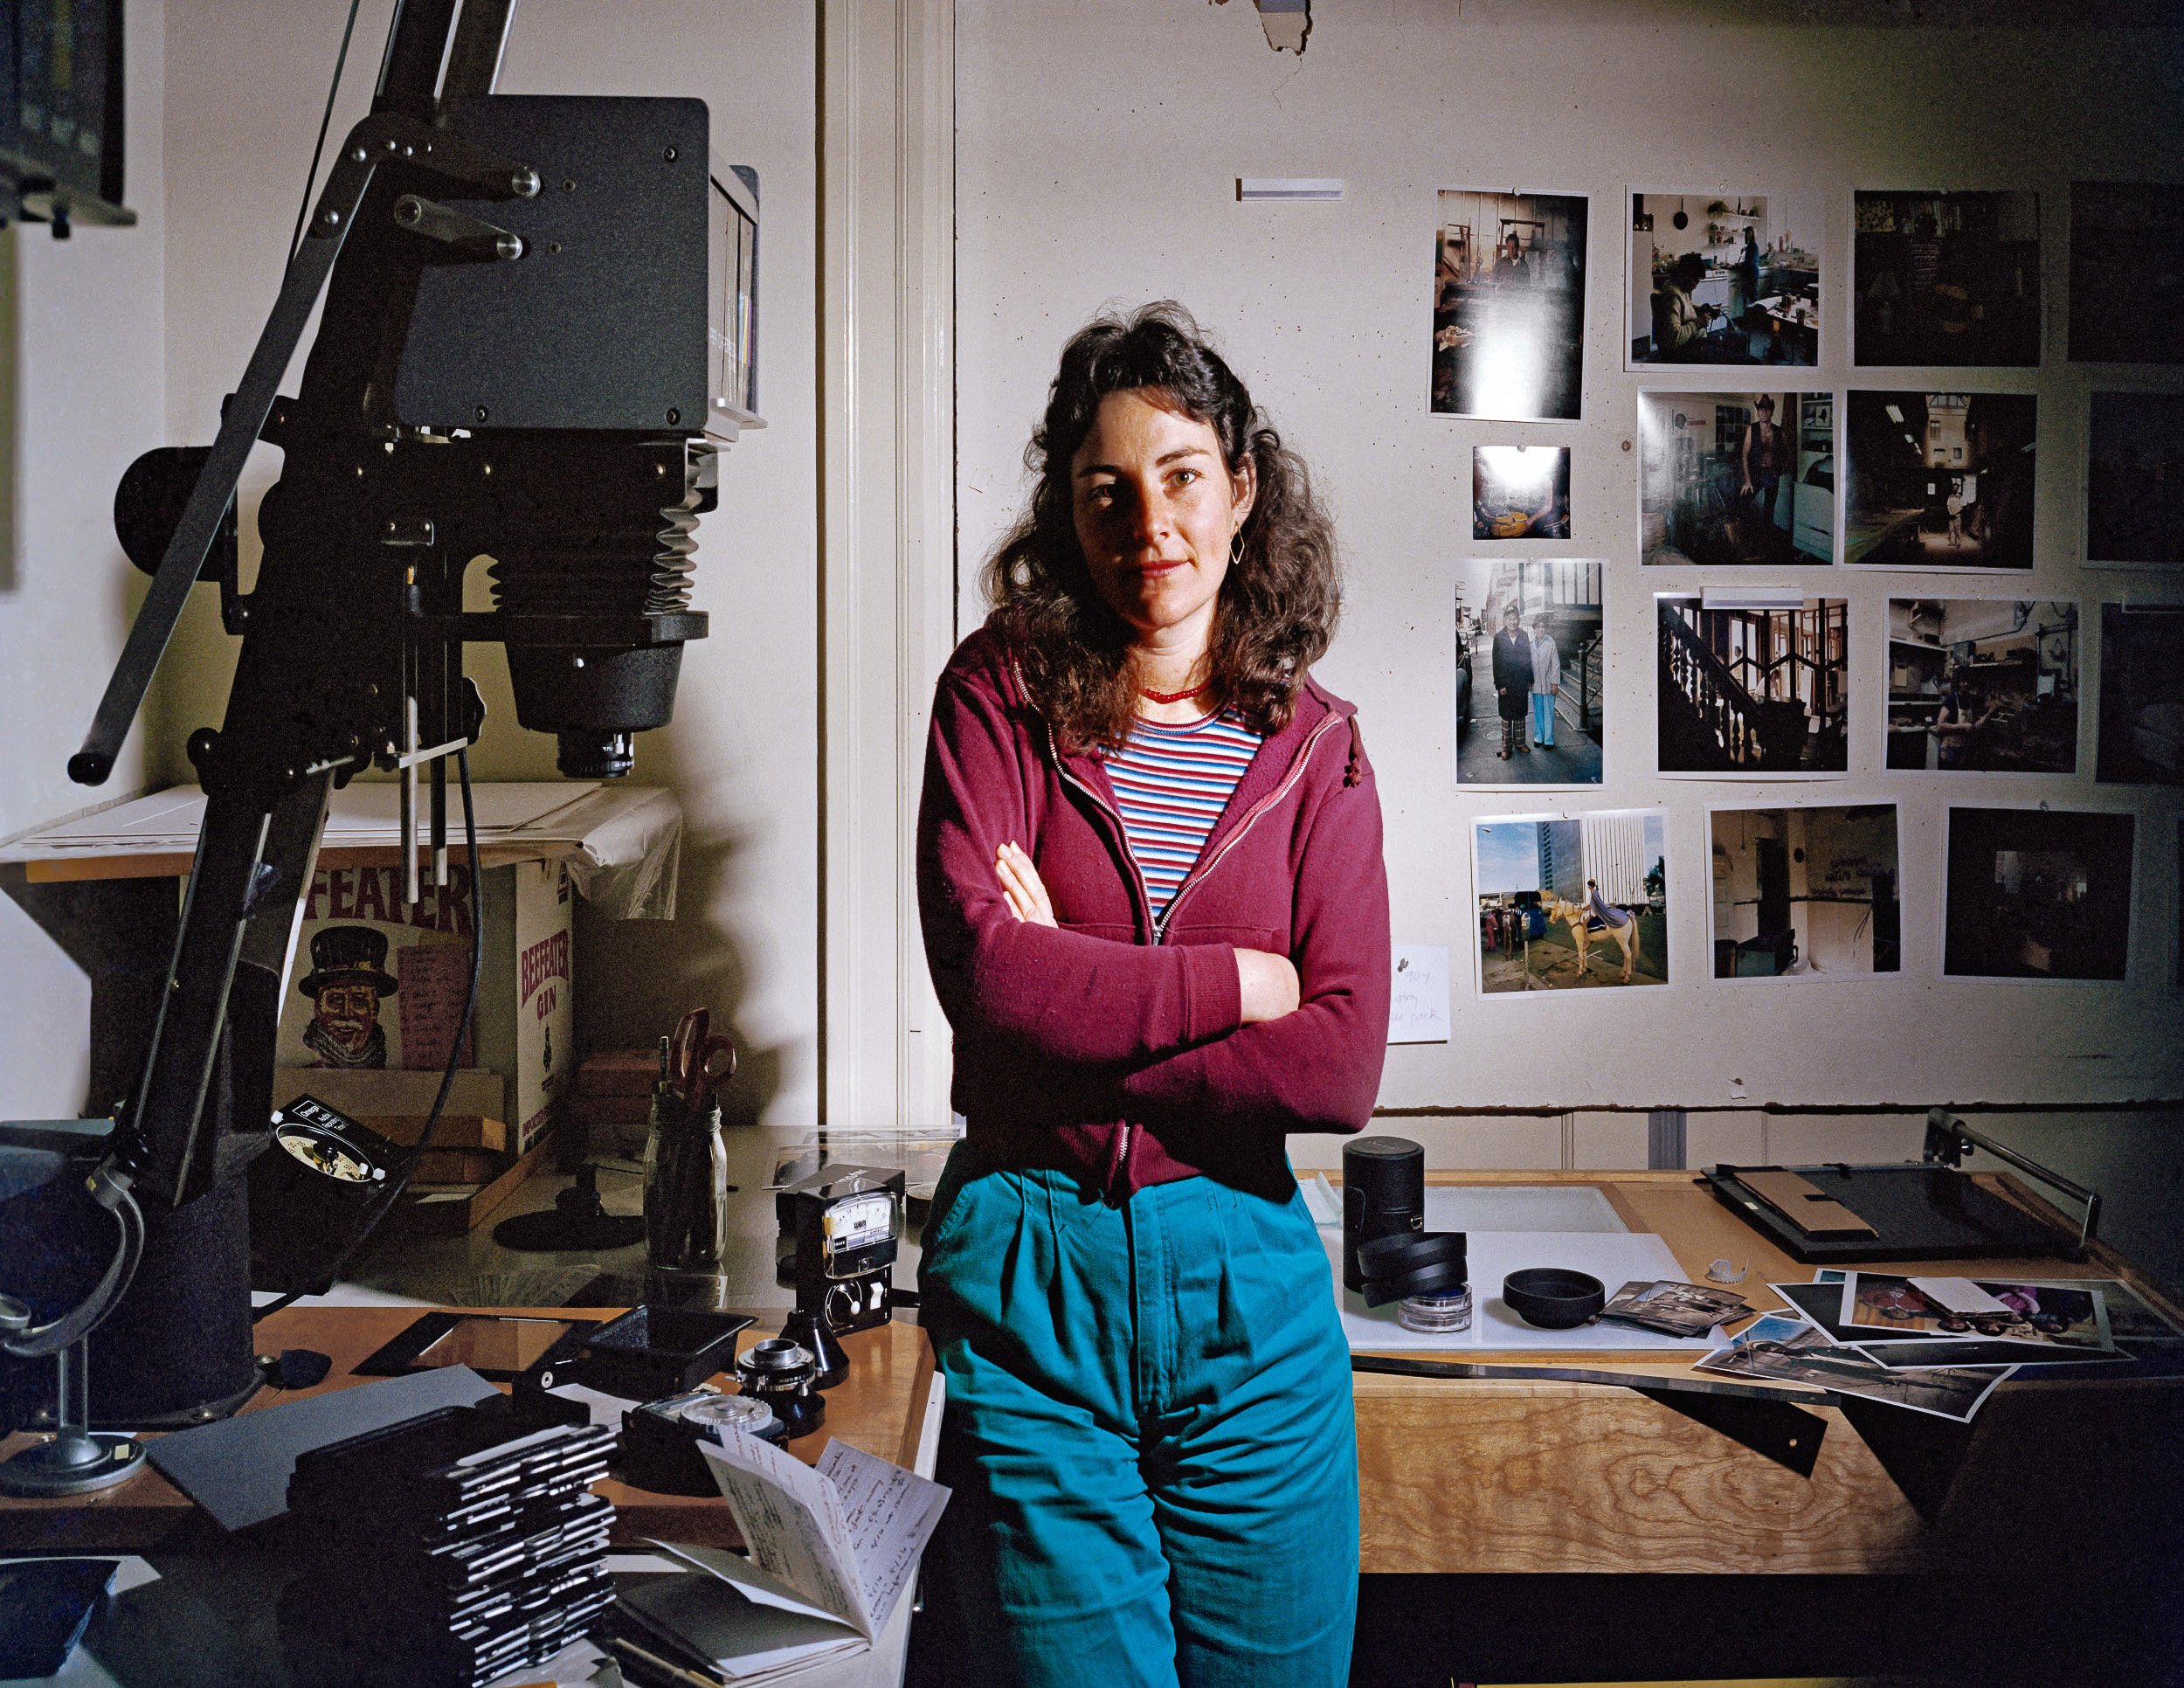   Janet Delaney in her Darkroom at 62 Langton Street, 1981  